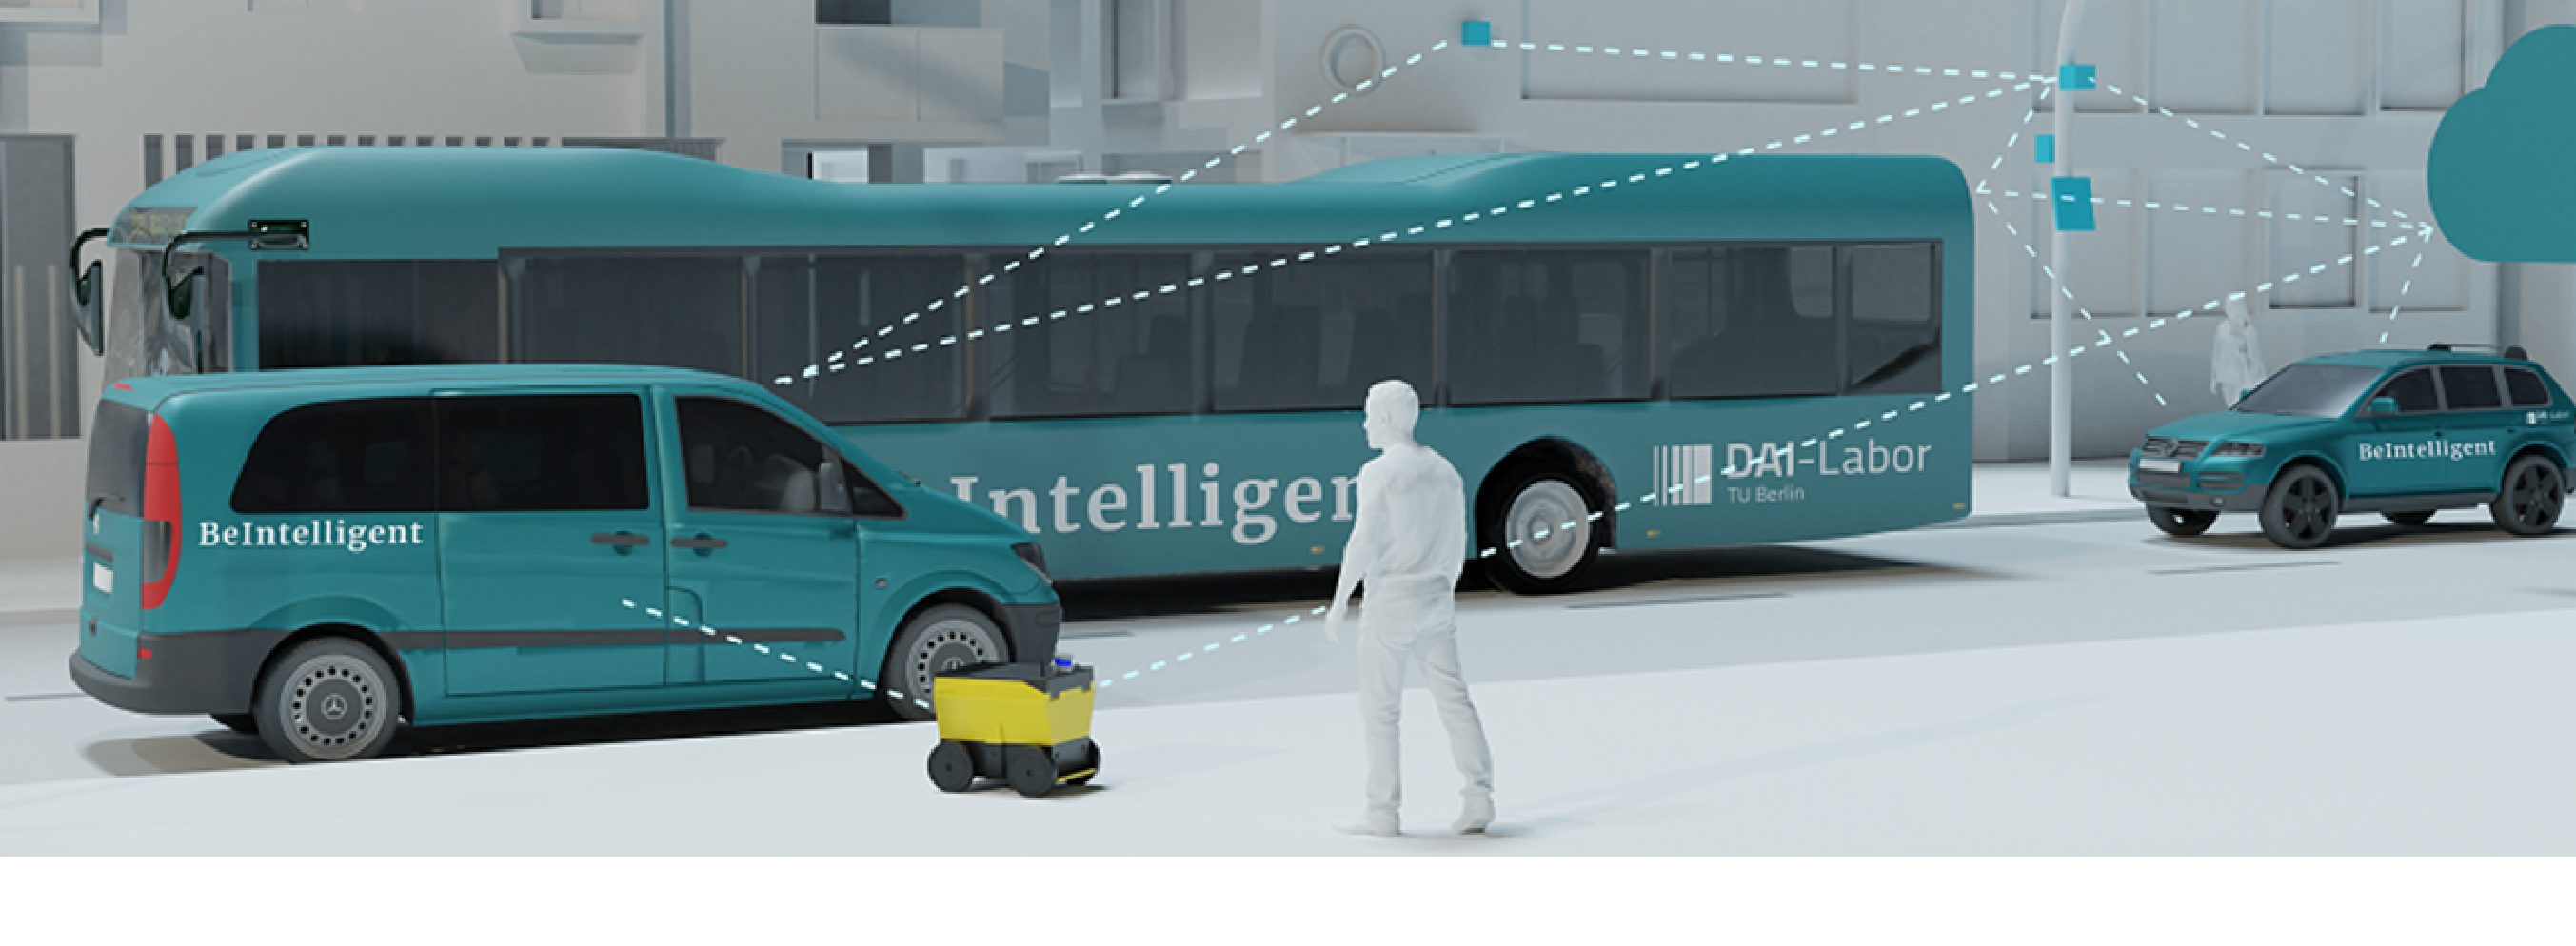 BeIntelligent - KI für die Mobilität der Zukunft auf Basis von Plattformökonomie